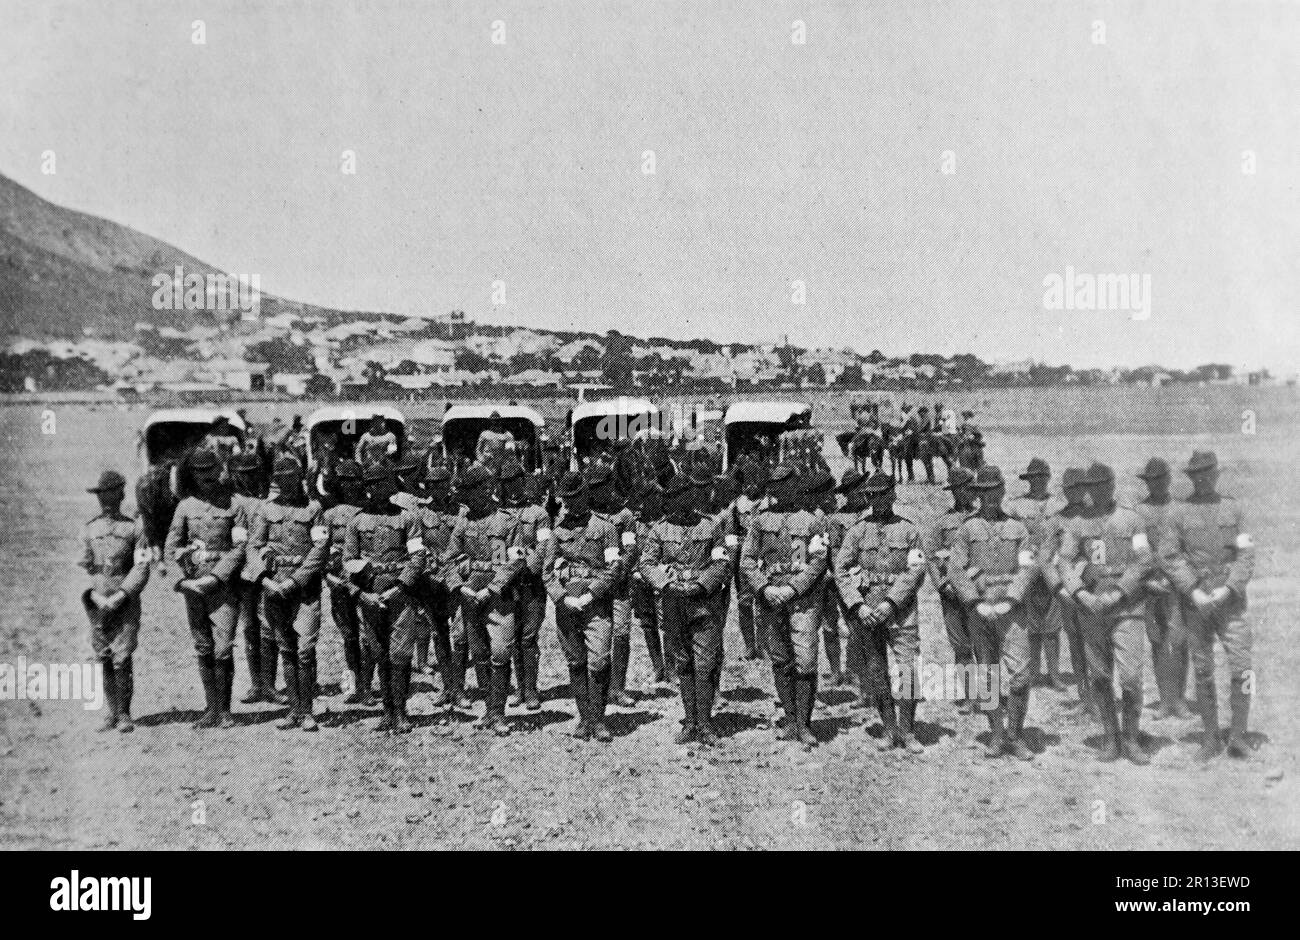 Der Burenkrieg, auch bekannt als der zweite Burenkrieg, der südafrikanische Krieg und der Anglo-Boer-Krieg. Dieses Bild zeigt die Sektion des Royal Army Medical Corps vor dem Abflug zur Front. Originalfoto von „Underwood and Underwood“, c1899. Stockfoto